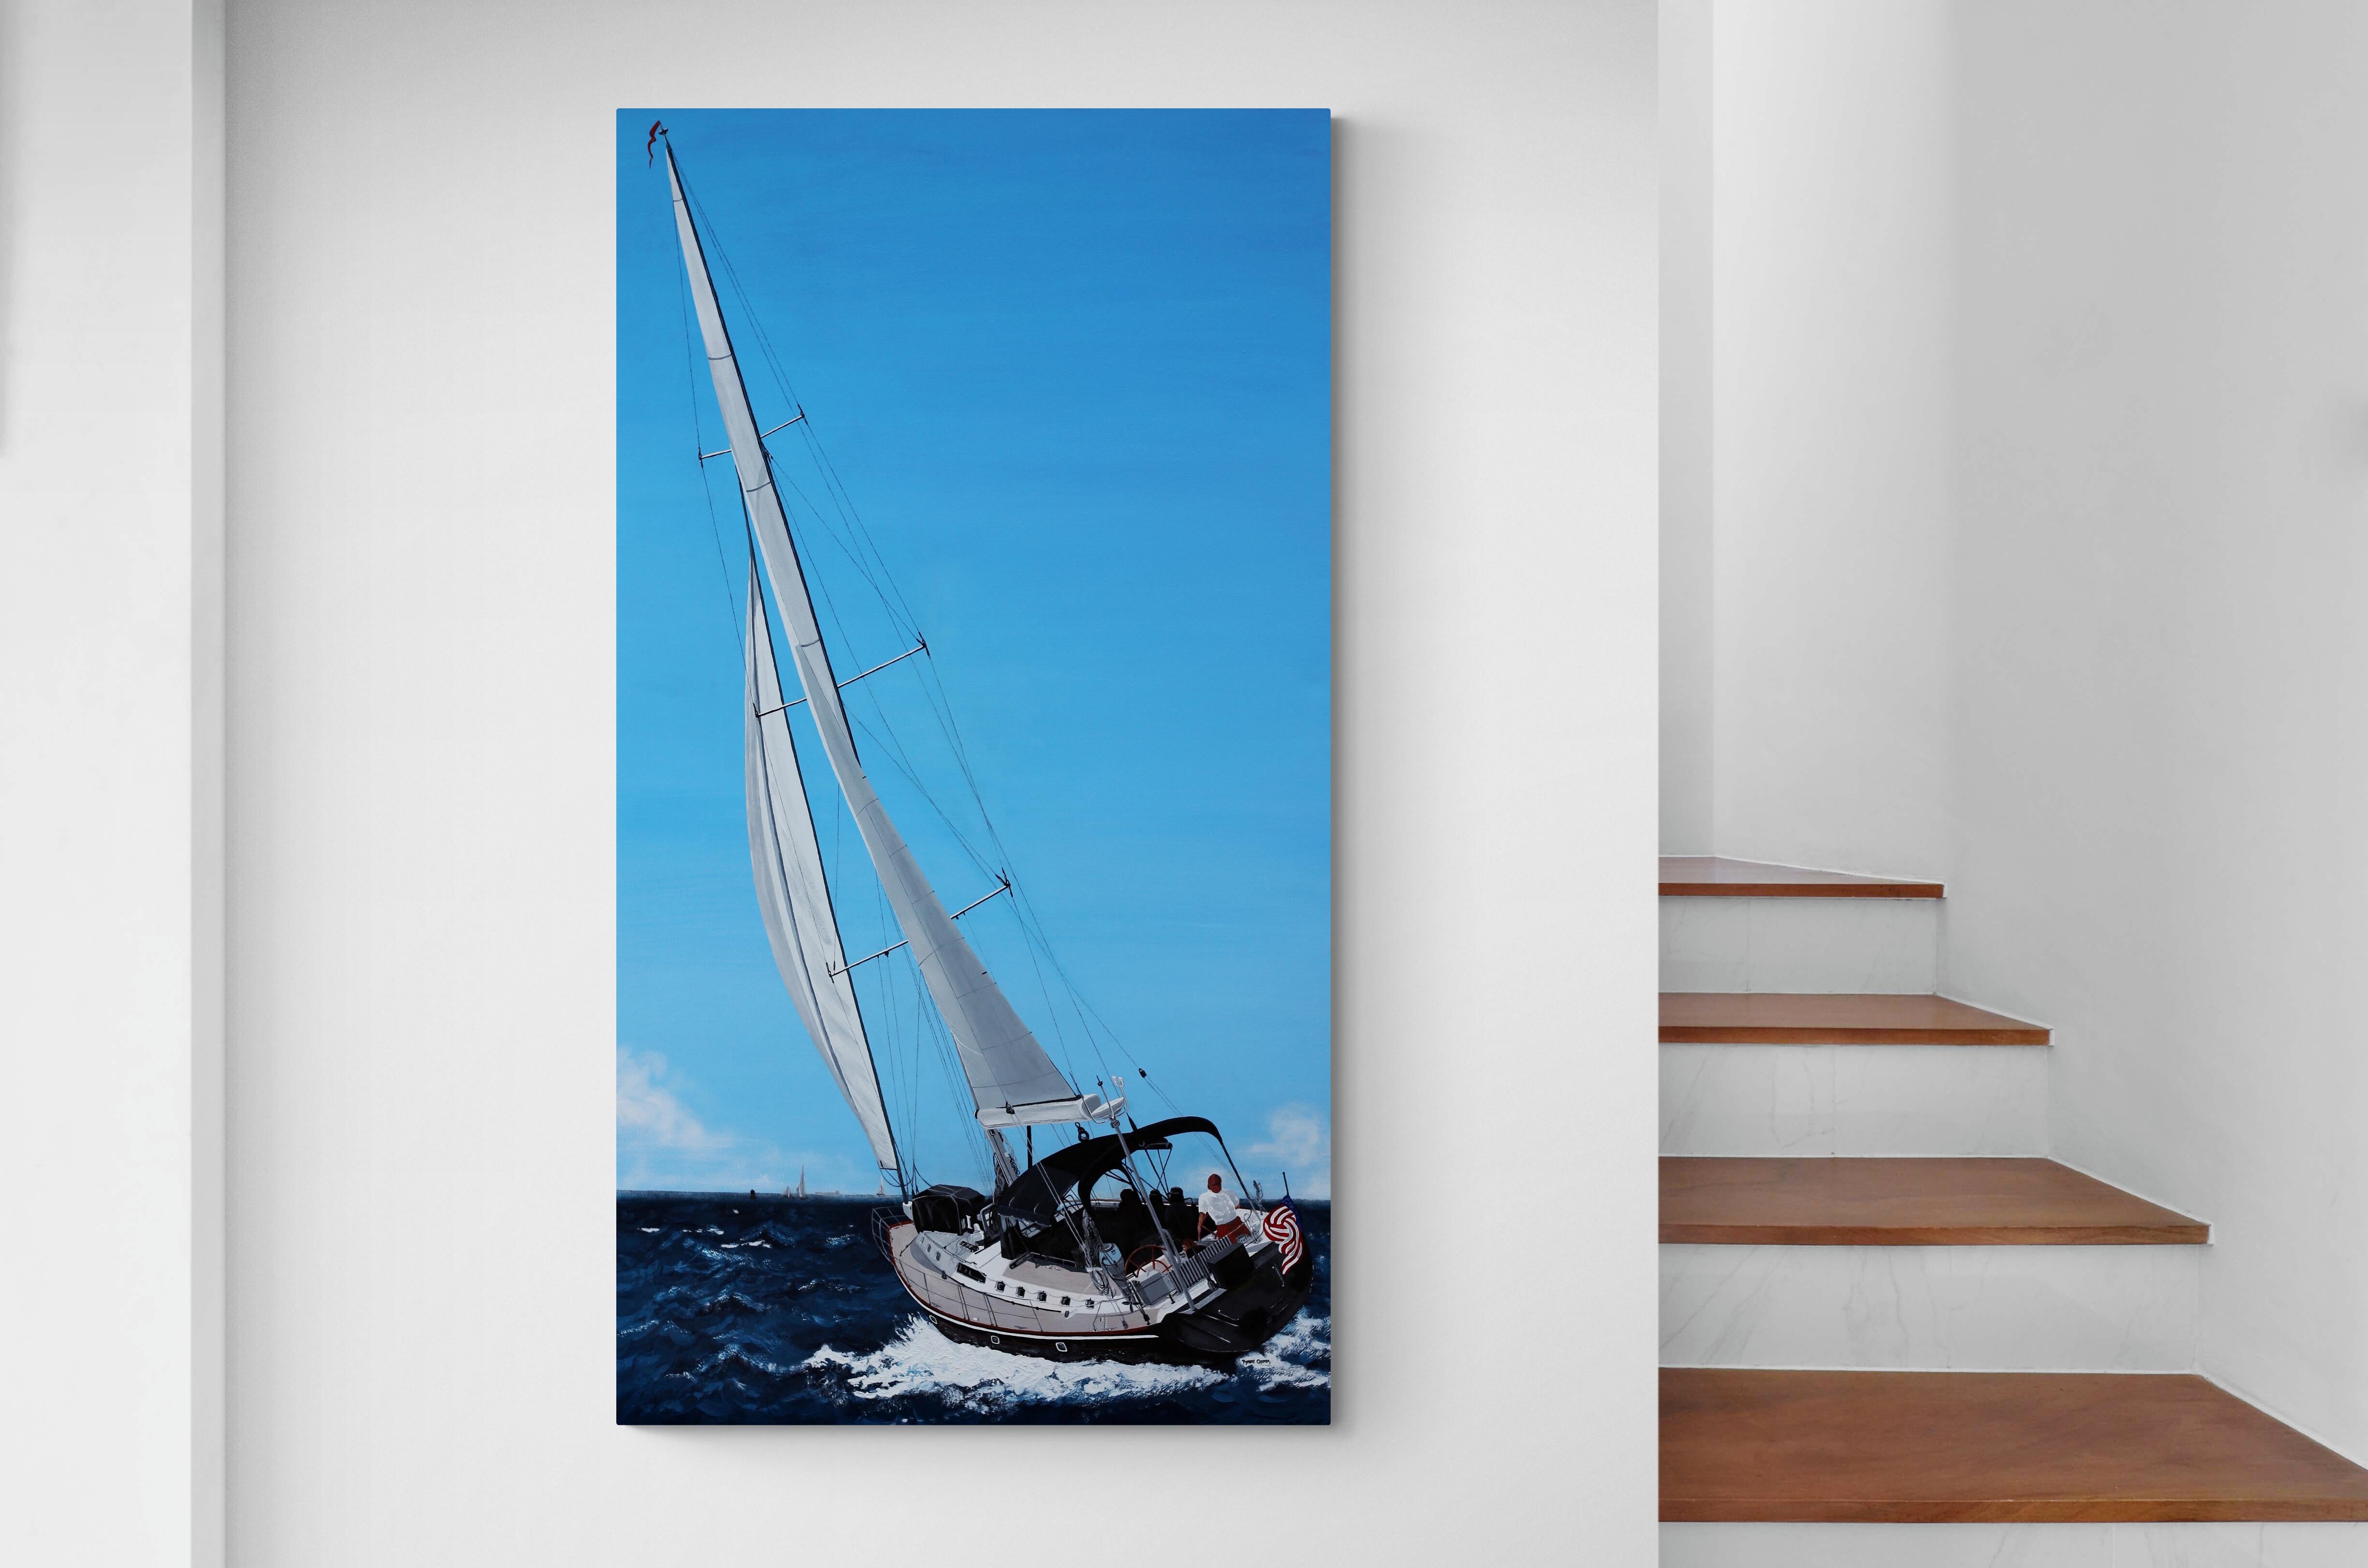 Dieses realistische Genrebild des Künstlers Robert Crooker zeigt ein Verkaufsboot, das sich nach links neigt, während es über die tiefblauen Gewässer vor der Küste von Rhode Island fährt. Die Details des Bootes, einschließlich der feinen Leinen, die